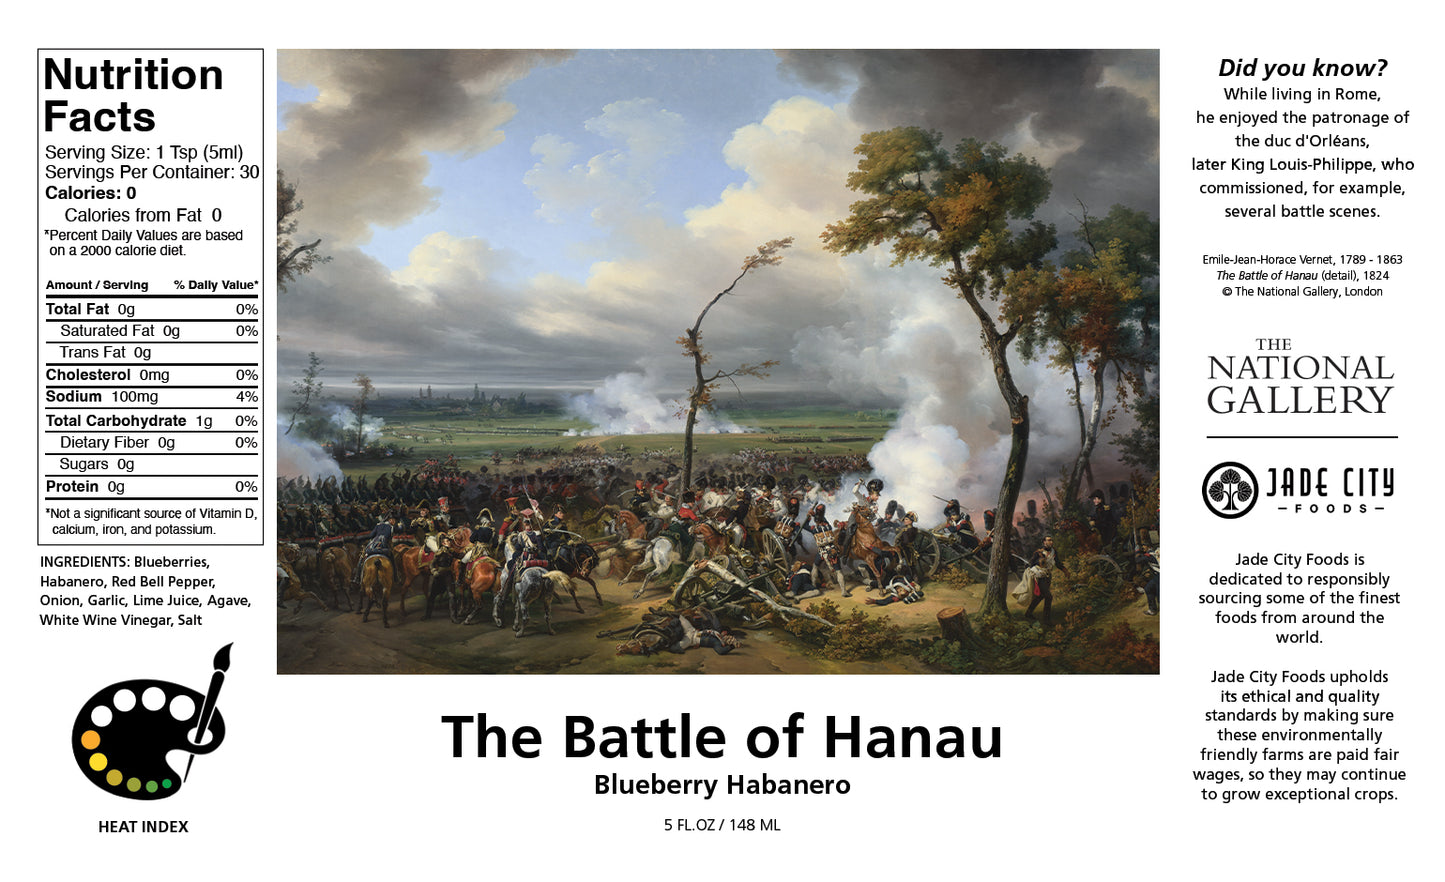 The Battle of Hanau : Blueberry Habanero